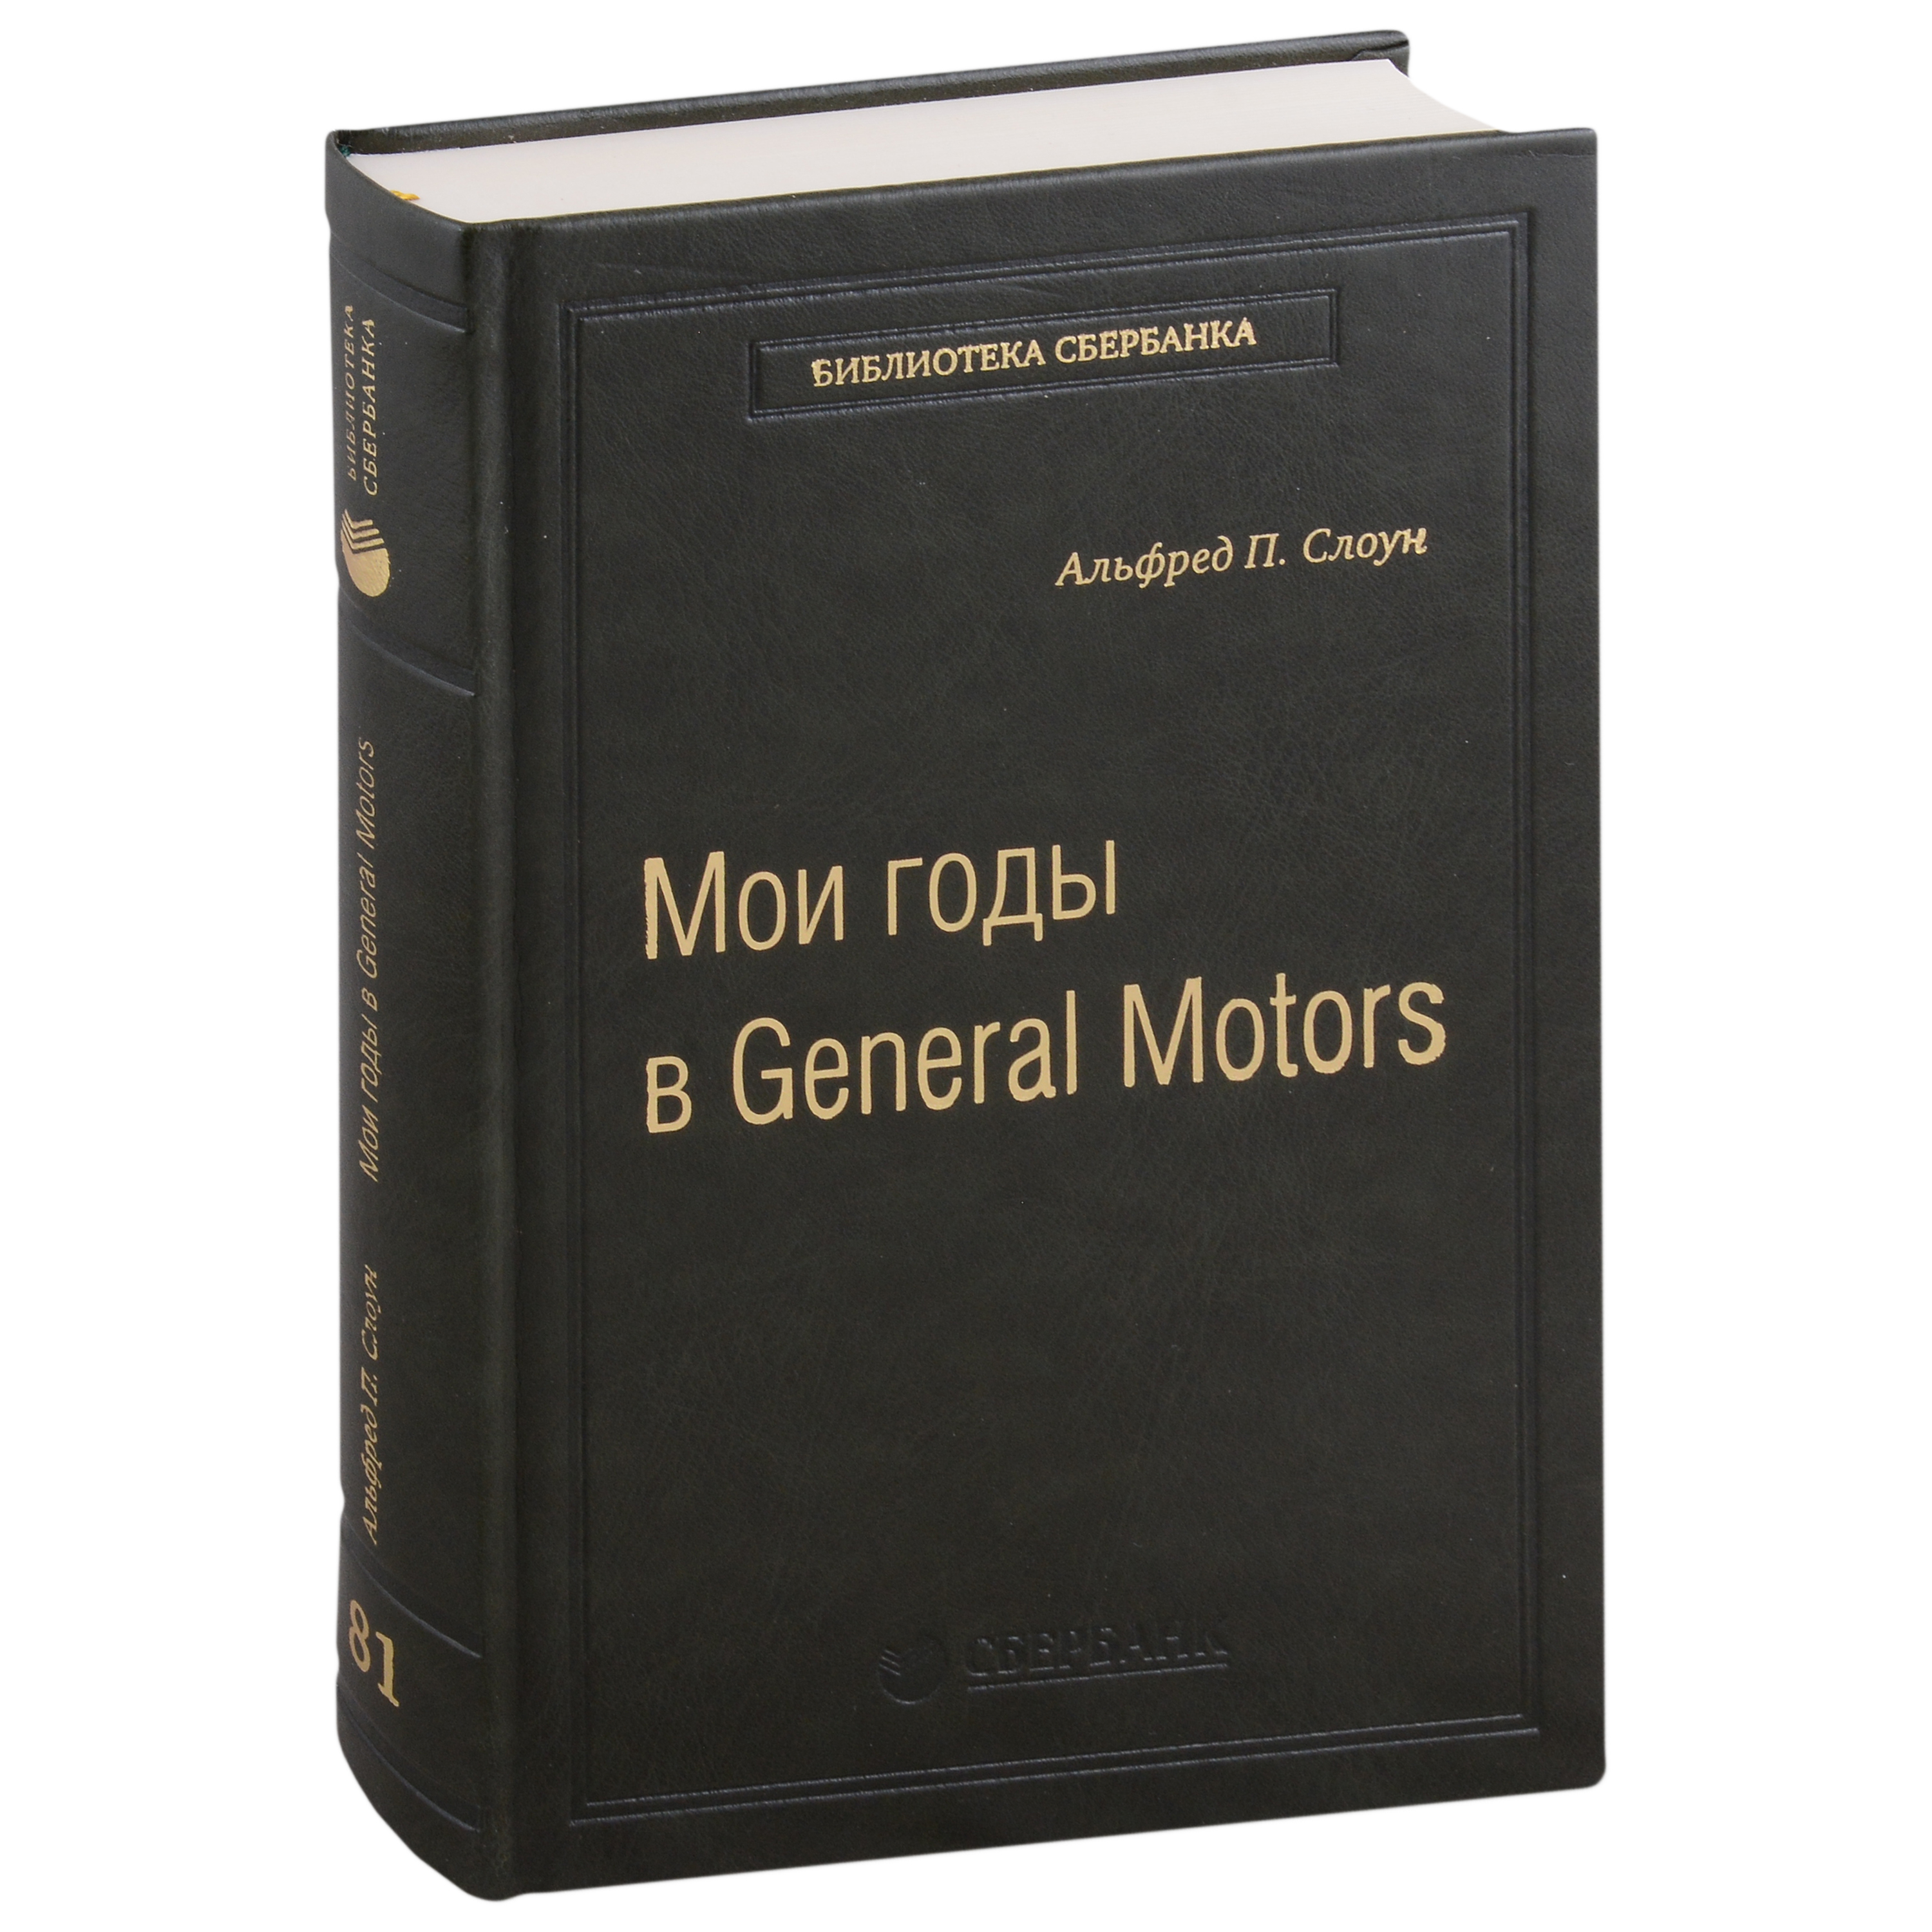    General Motors.  81